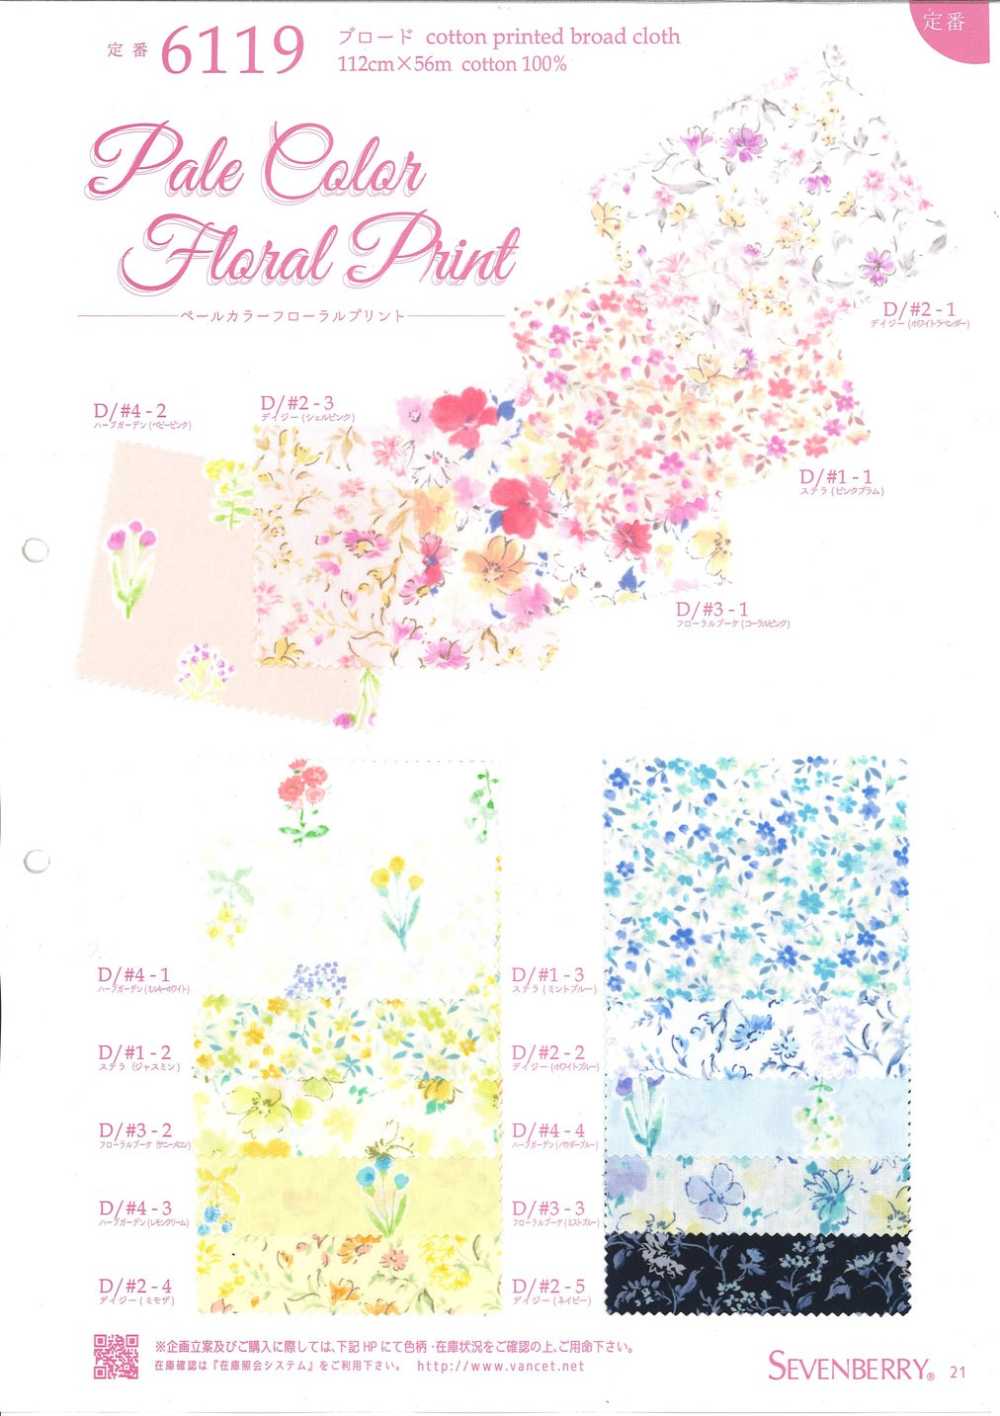 6119 平紋布的淺色花卉印花[面料] VANCET